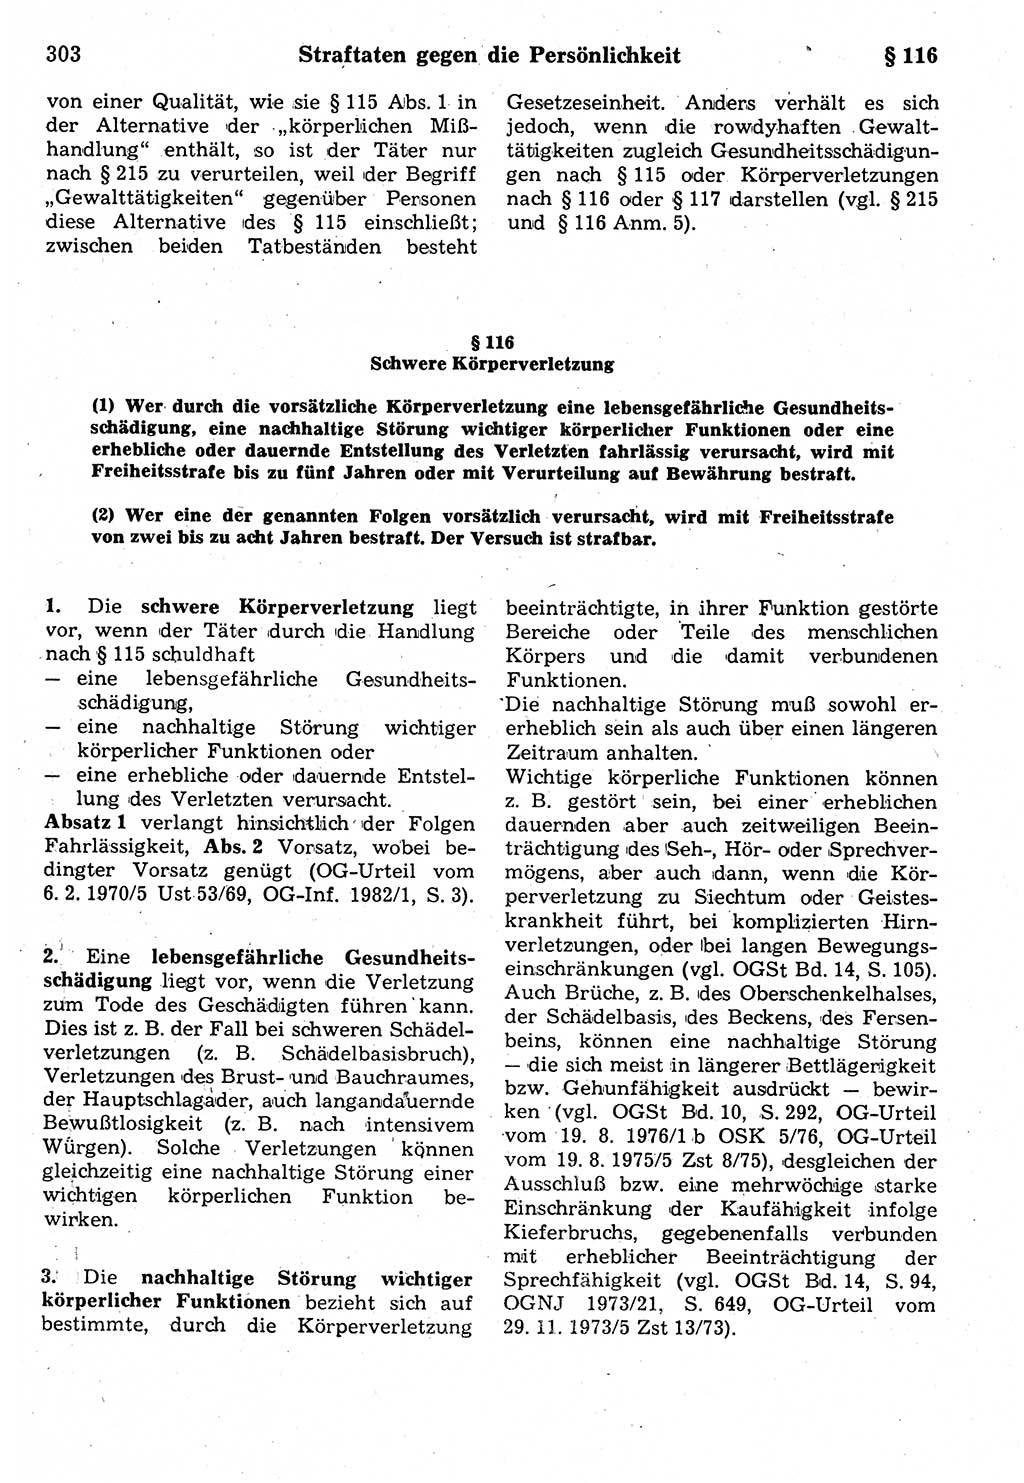 Strafrecht der Deutschen Demokratischen Republik (DDR), Kommentar zum Strafgesetzbuch (StGB) 1987, Seite 303 (Strafr. DDR Komm. StGB 1987, S. 303)